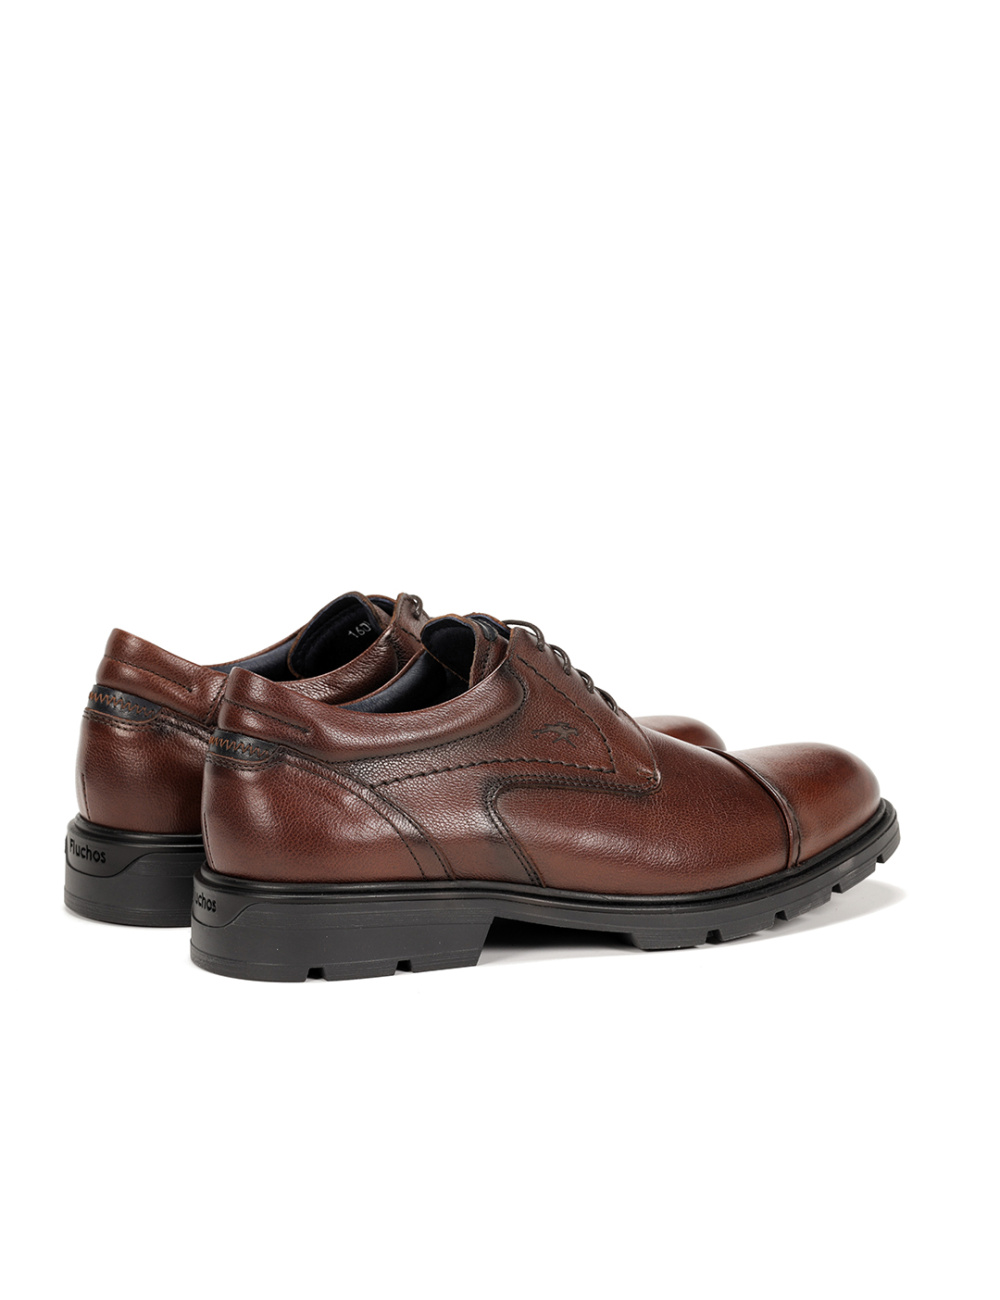 Fluchos - Zapato casual de hombre F1608